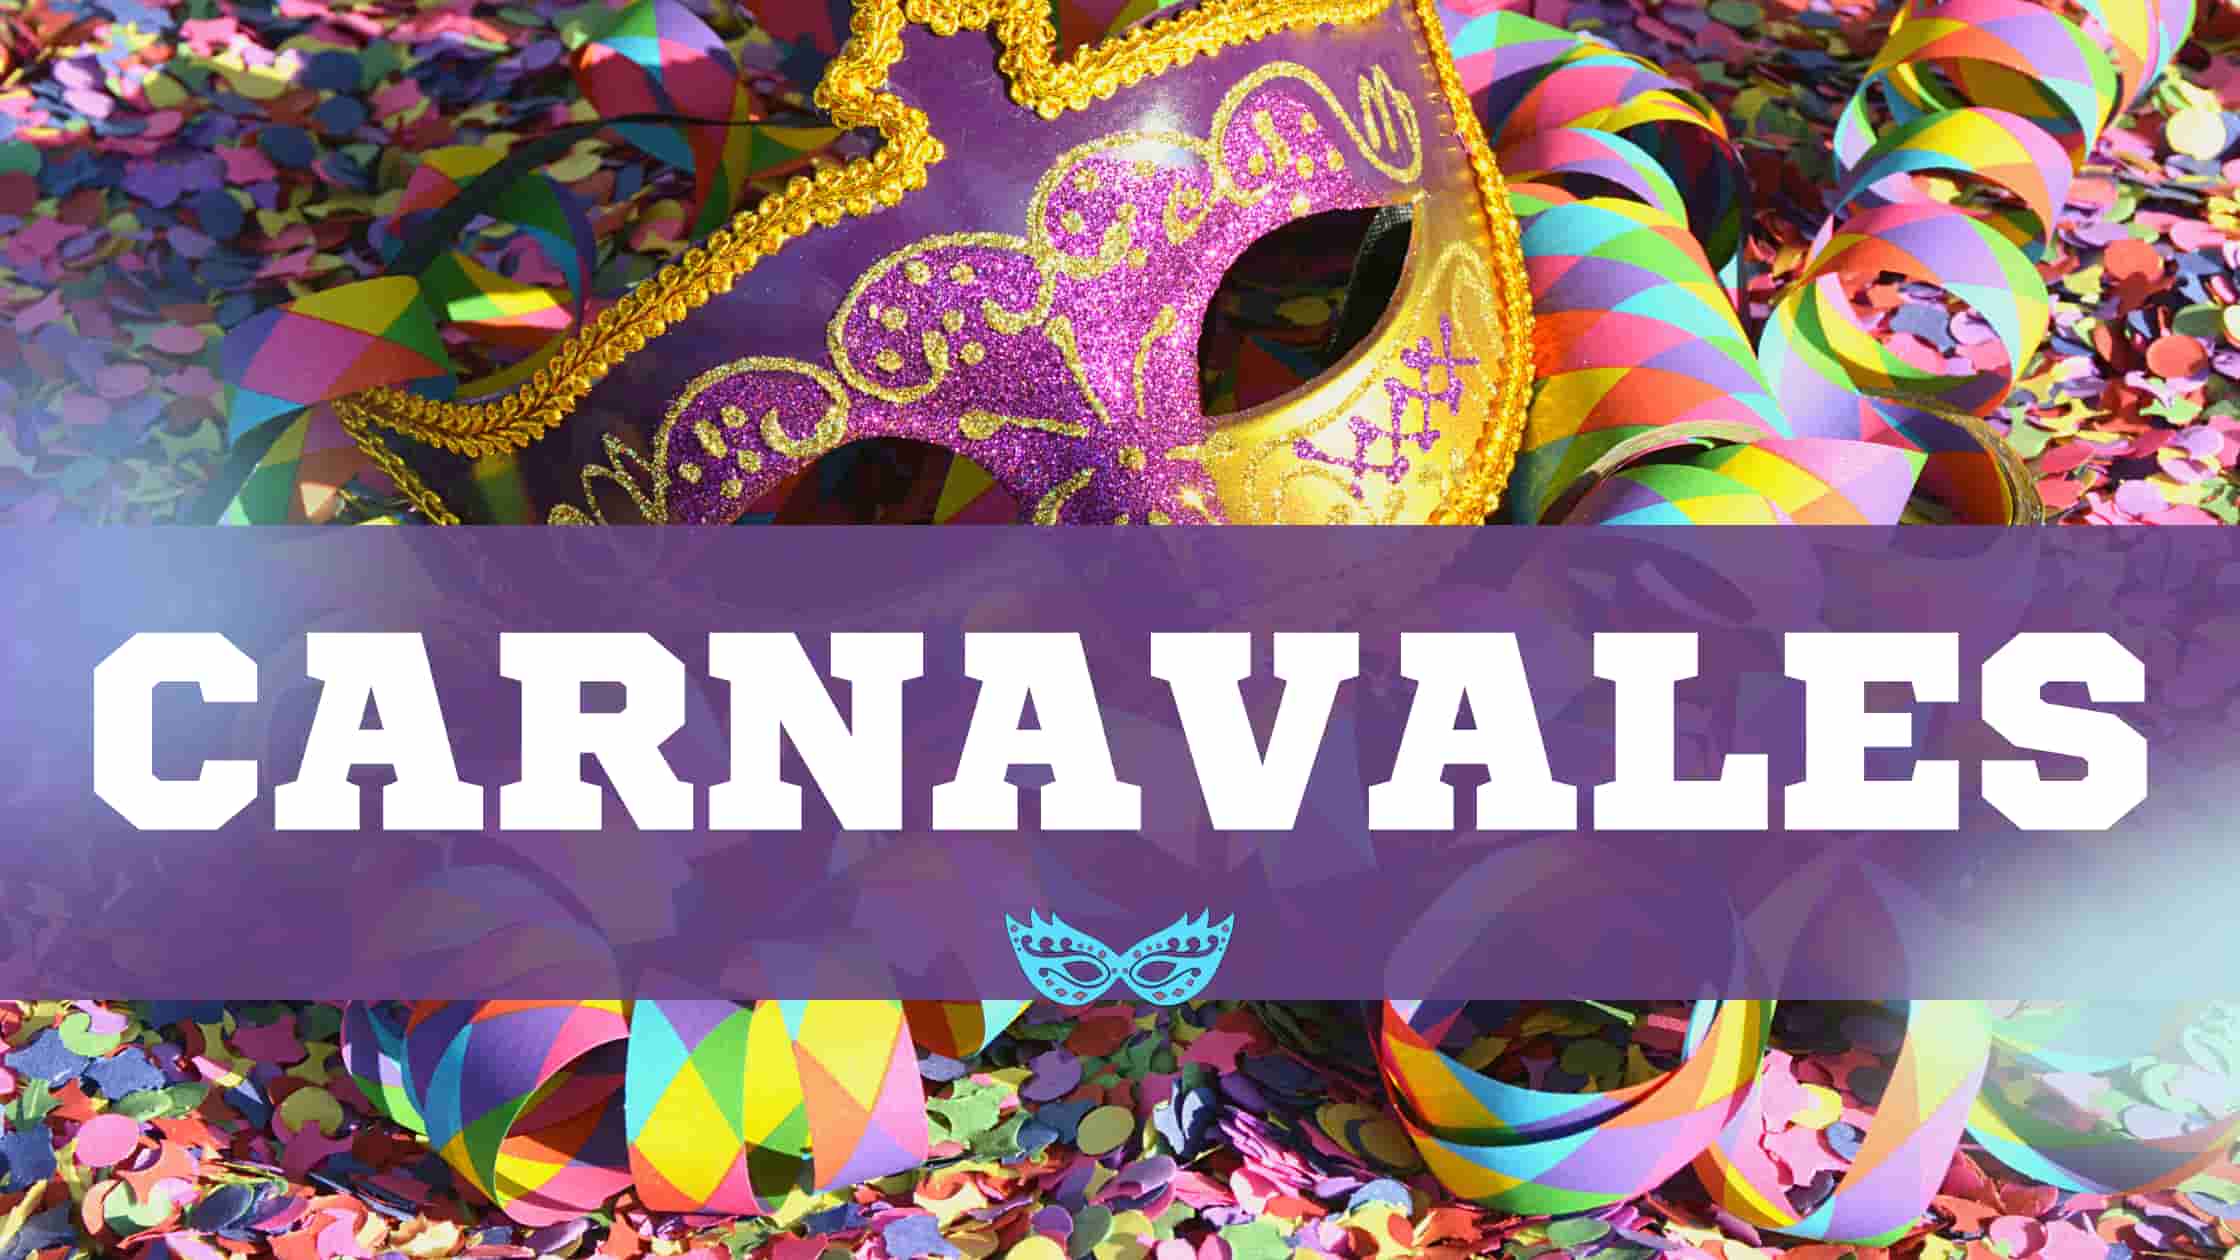 Domina el Carnaval con disfraces originales y divertidos